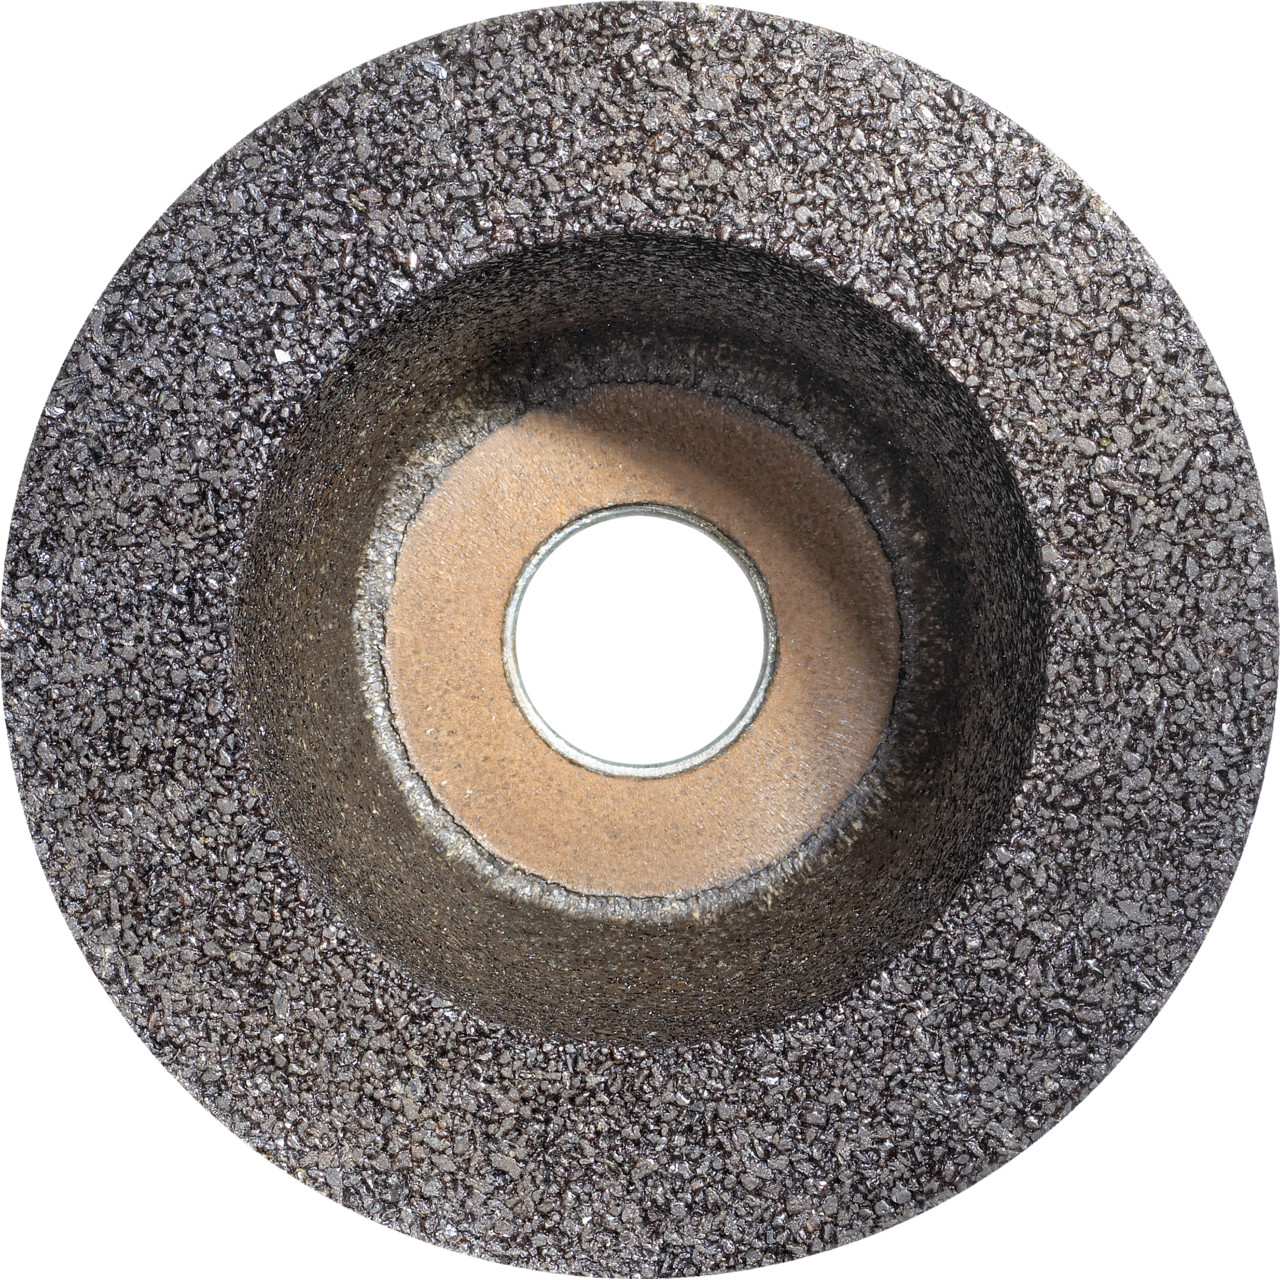 Tyrolit Tazza in resina D/JxTxGE 110/90x55xM14 Per pietra, forma: 11ZB ruota a tazza, Art. 310993